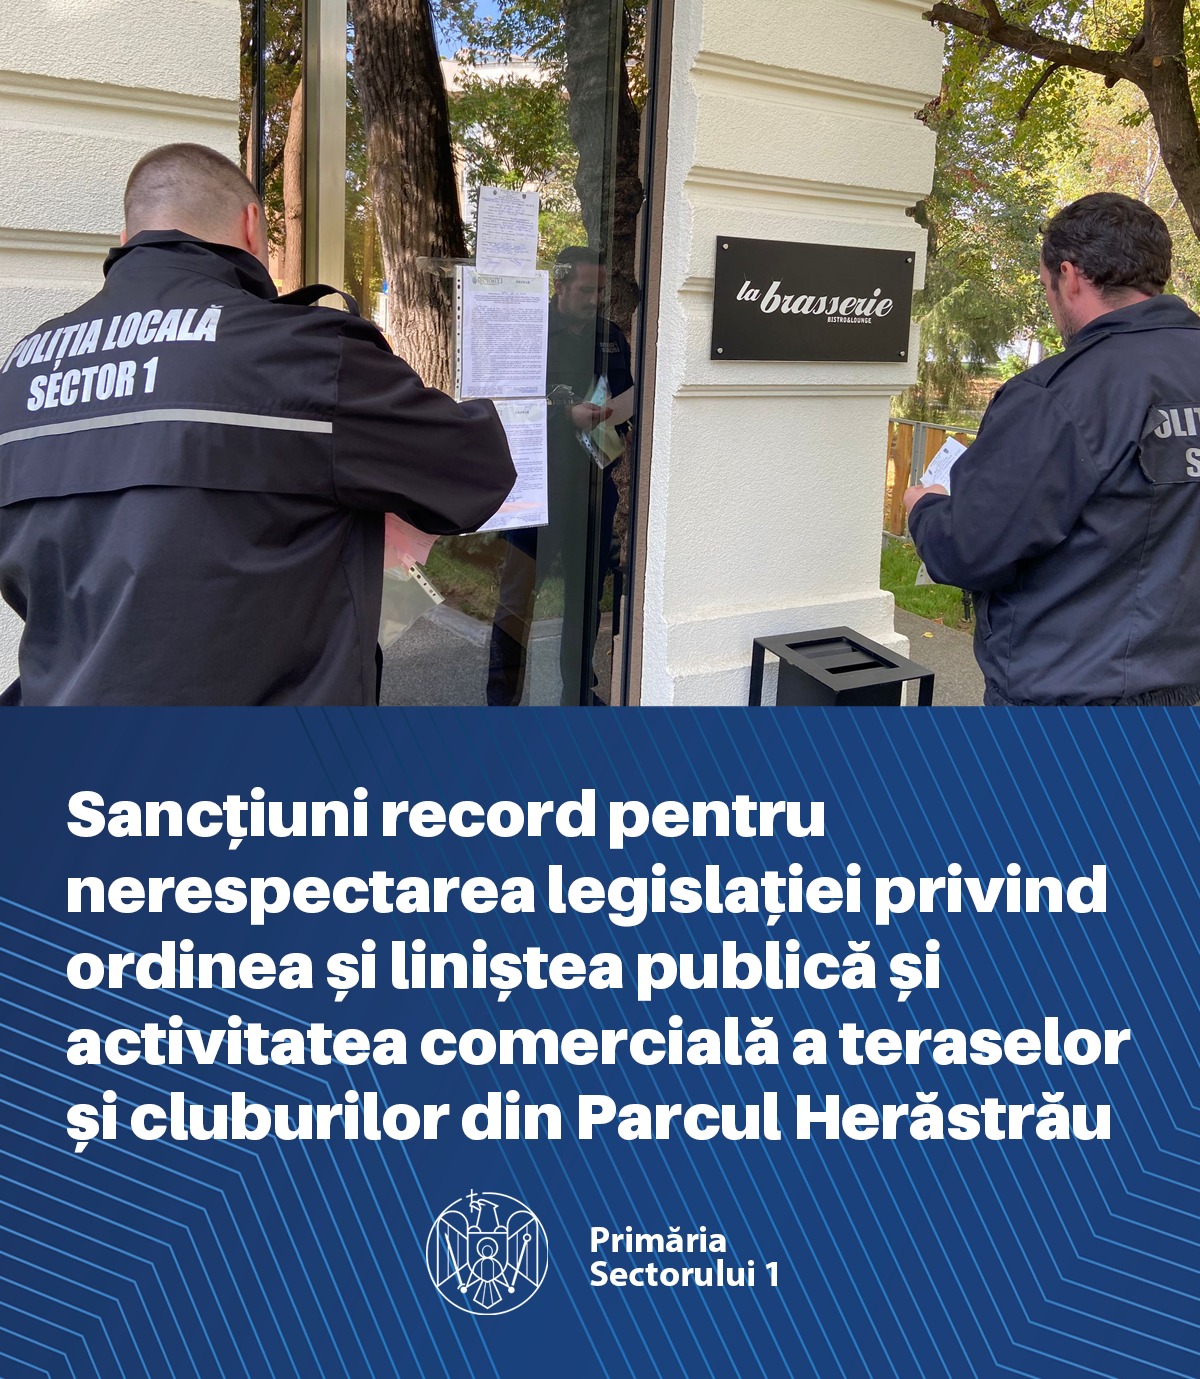 40 de sancțiuni în cuantum de 34.000 lei pentru depășirea limitelor de zgomot în  Parcul Herăstrău. Clotilde Armand: “Le transmit un singur mesaj: Respectați legea!”